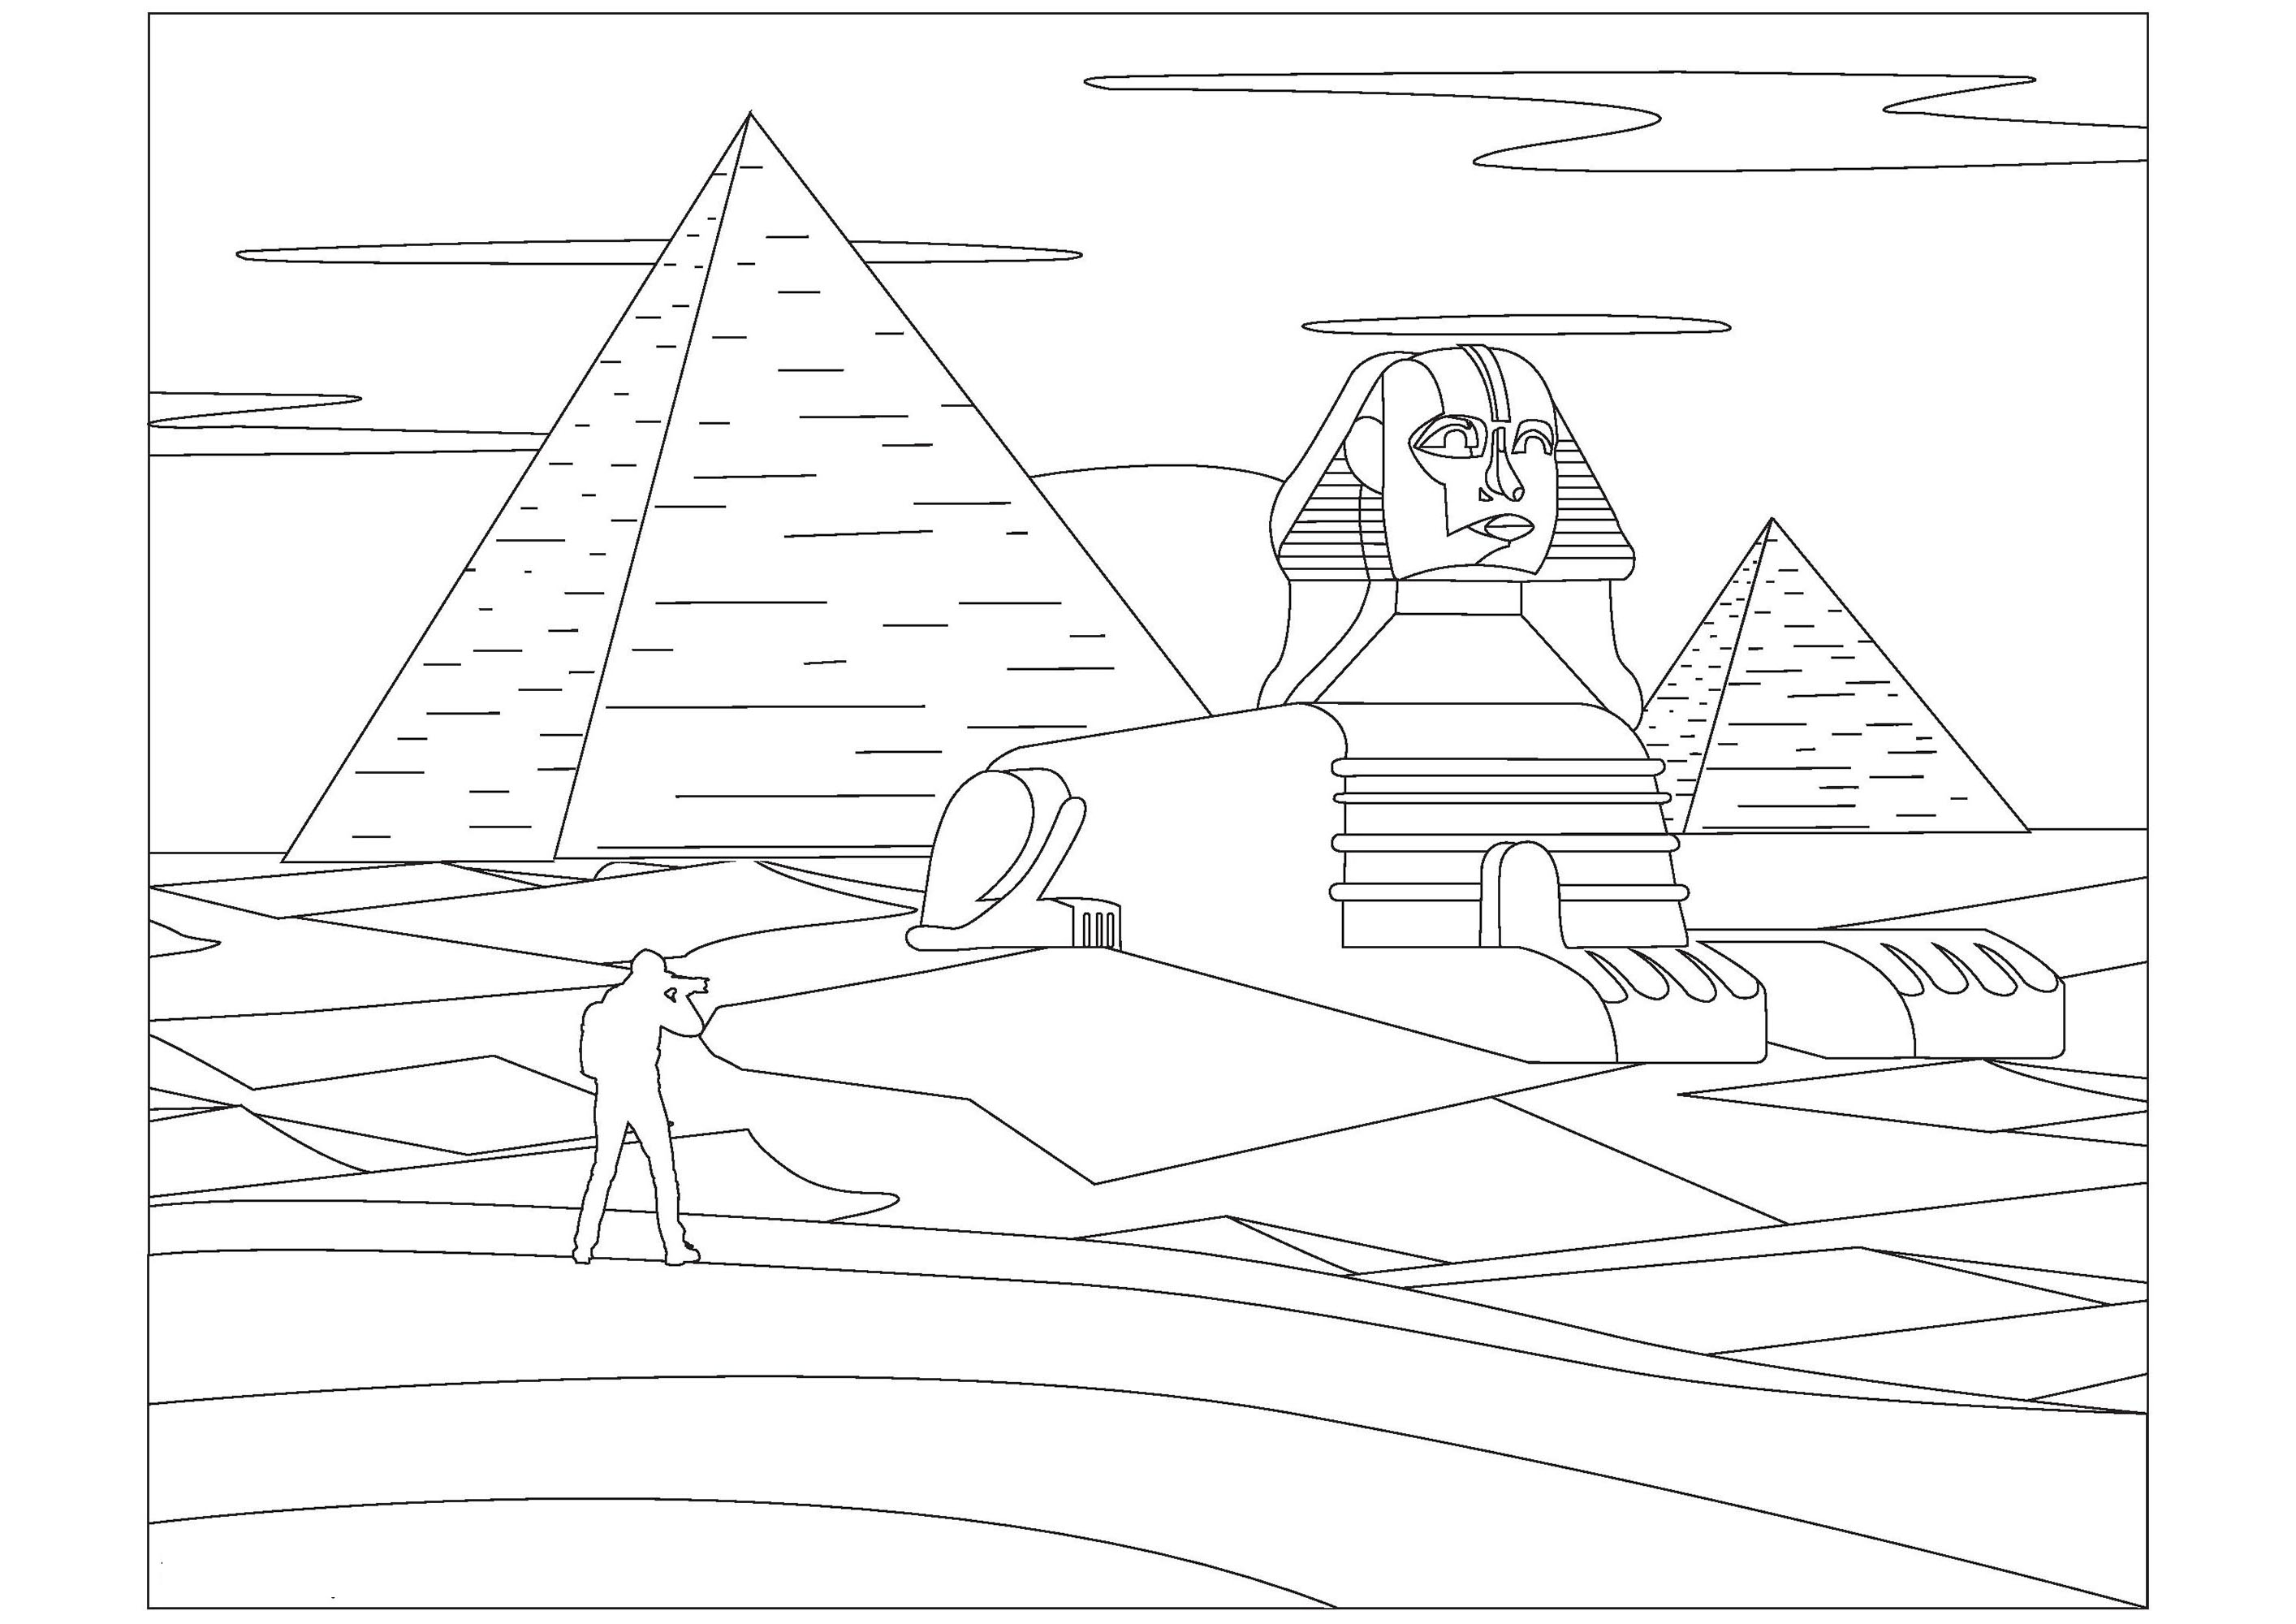 Coloração da esfinge e das pirâmides no Egito. A Esfinge é uma estátua de pedra que foi construída há muito tempo no Egipto. Tem a cabeça de um faraó e o corpo de um leão. As Pirâmides são edifícios de pedra muito grandes e antigos, construídos também no Egipto, foram utilizados como túmulos para os faraós.